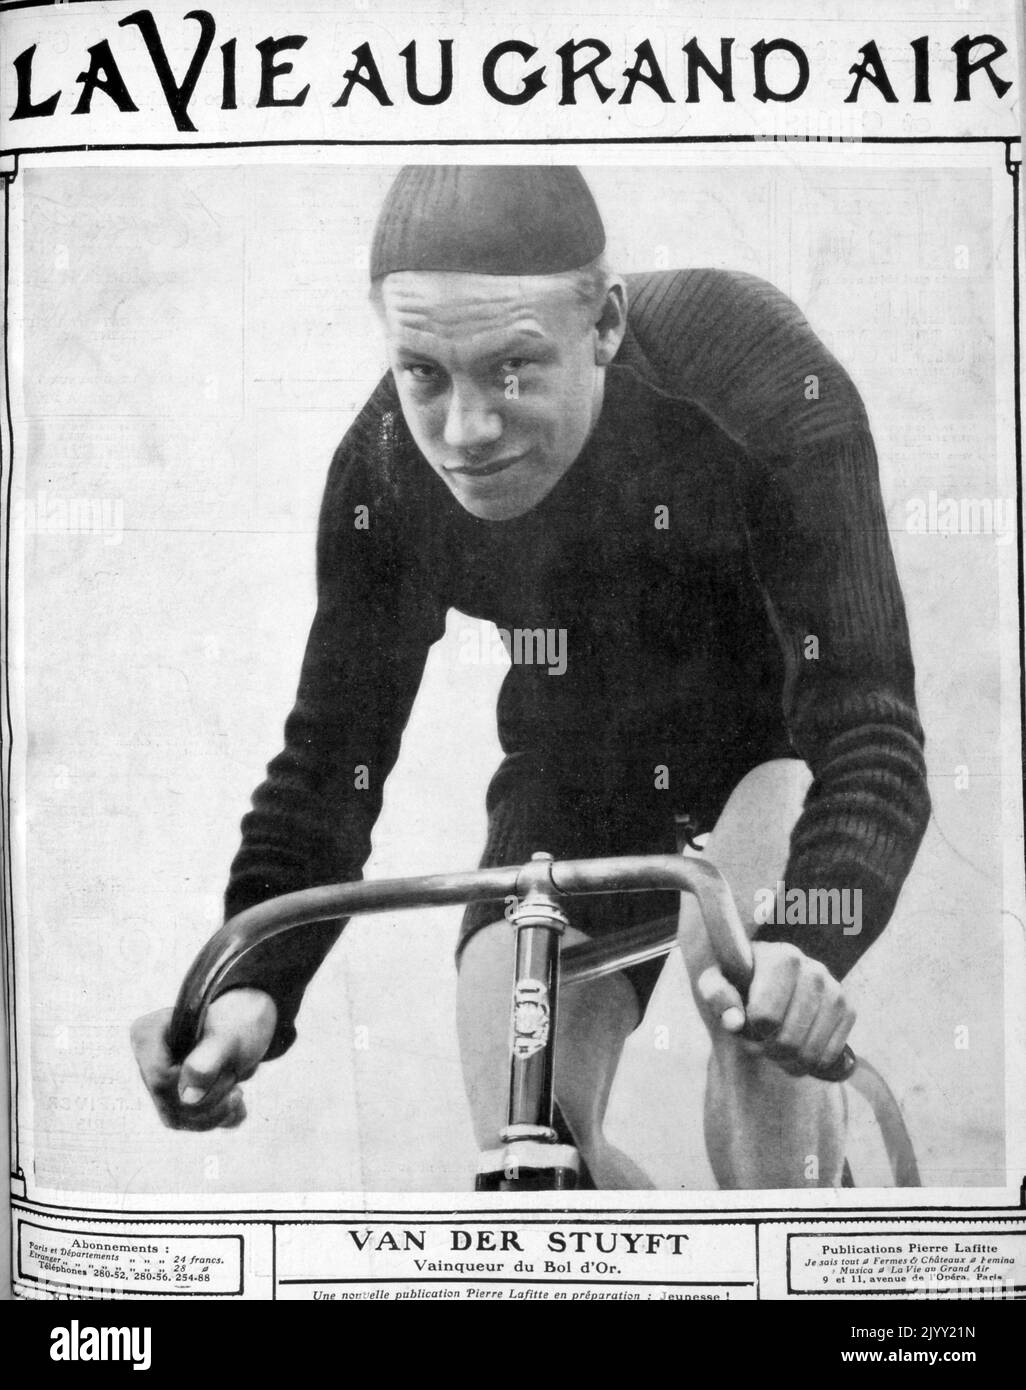 Arthur Vanderstuyft (1883 - 1956), ciclista belga. Ha gareggiato in corse automobilistiche nella categoria professionisti e ha vinto tre medaglie ai campionati del mondo nel 1904, 1906 e 1908. Come ciclista ha gareggiato in dieci gare di sei giorni e due volte ha finito al secondo posto: Nel 1904 a New York e nel 1912 a Bruxelles. Foto Stock